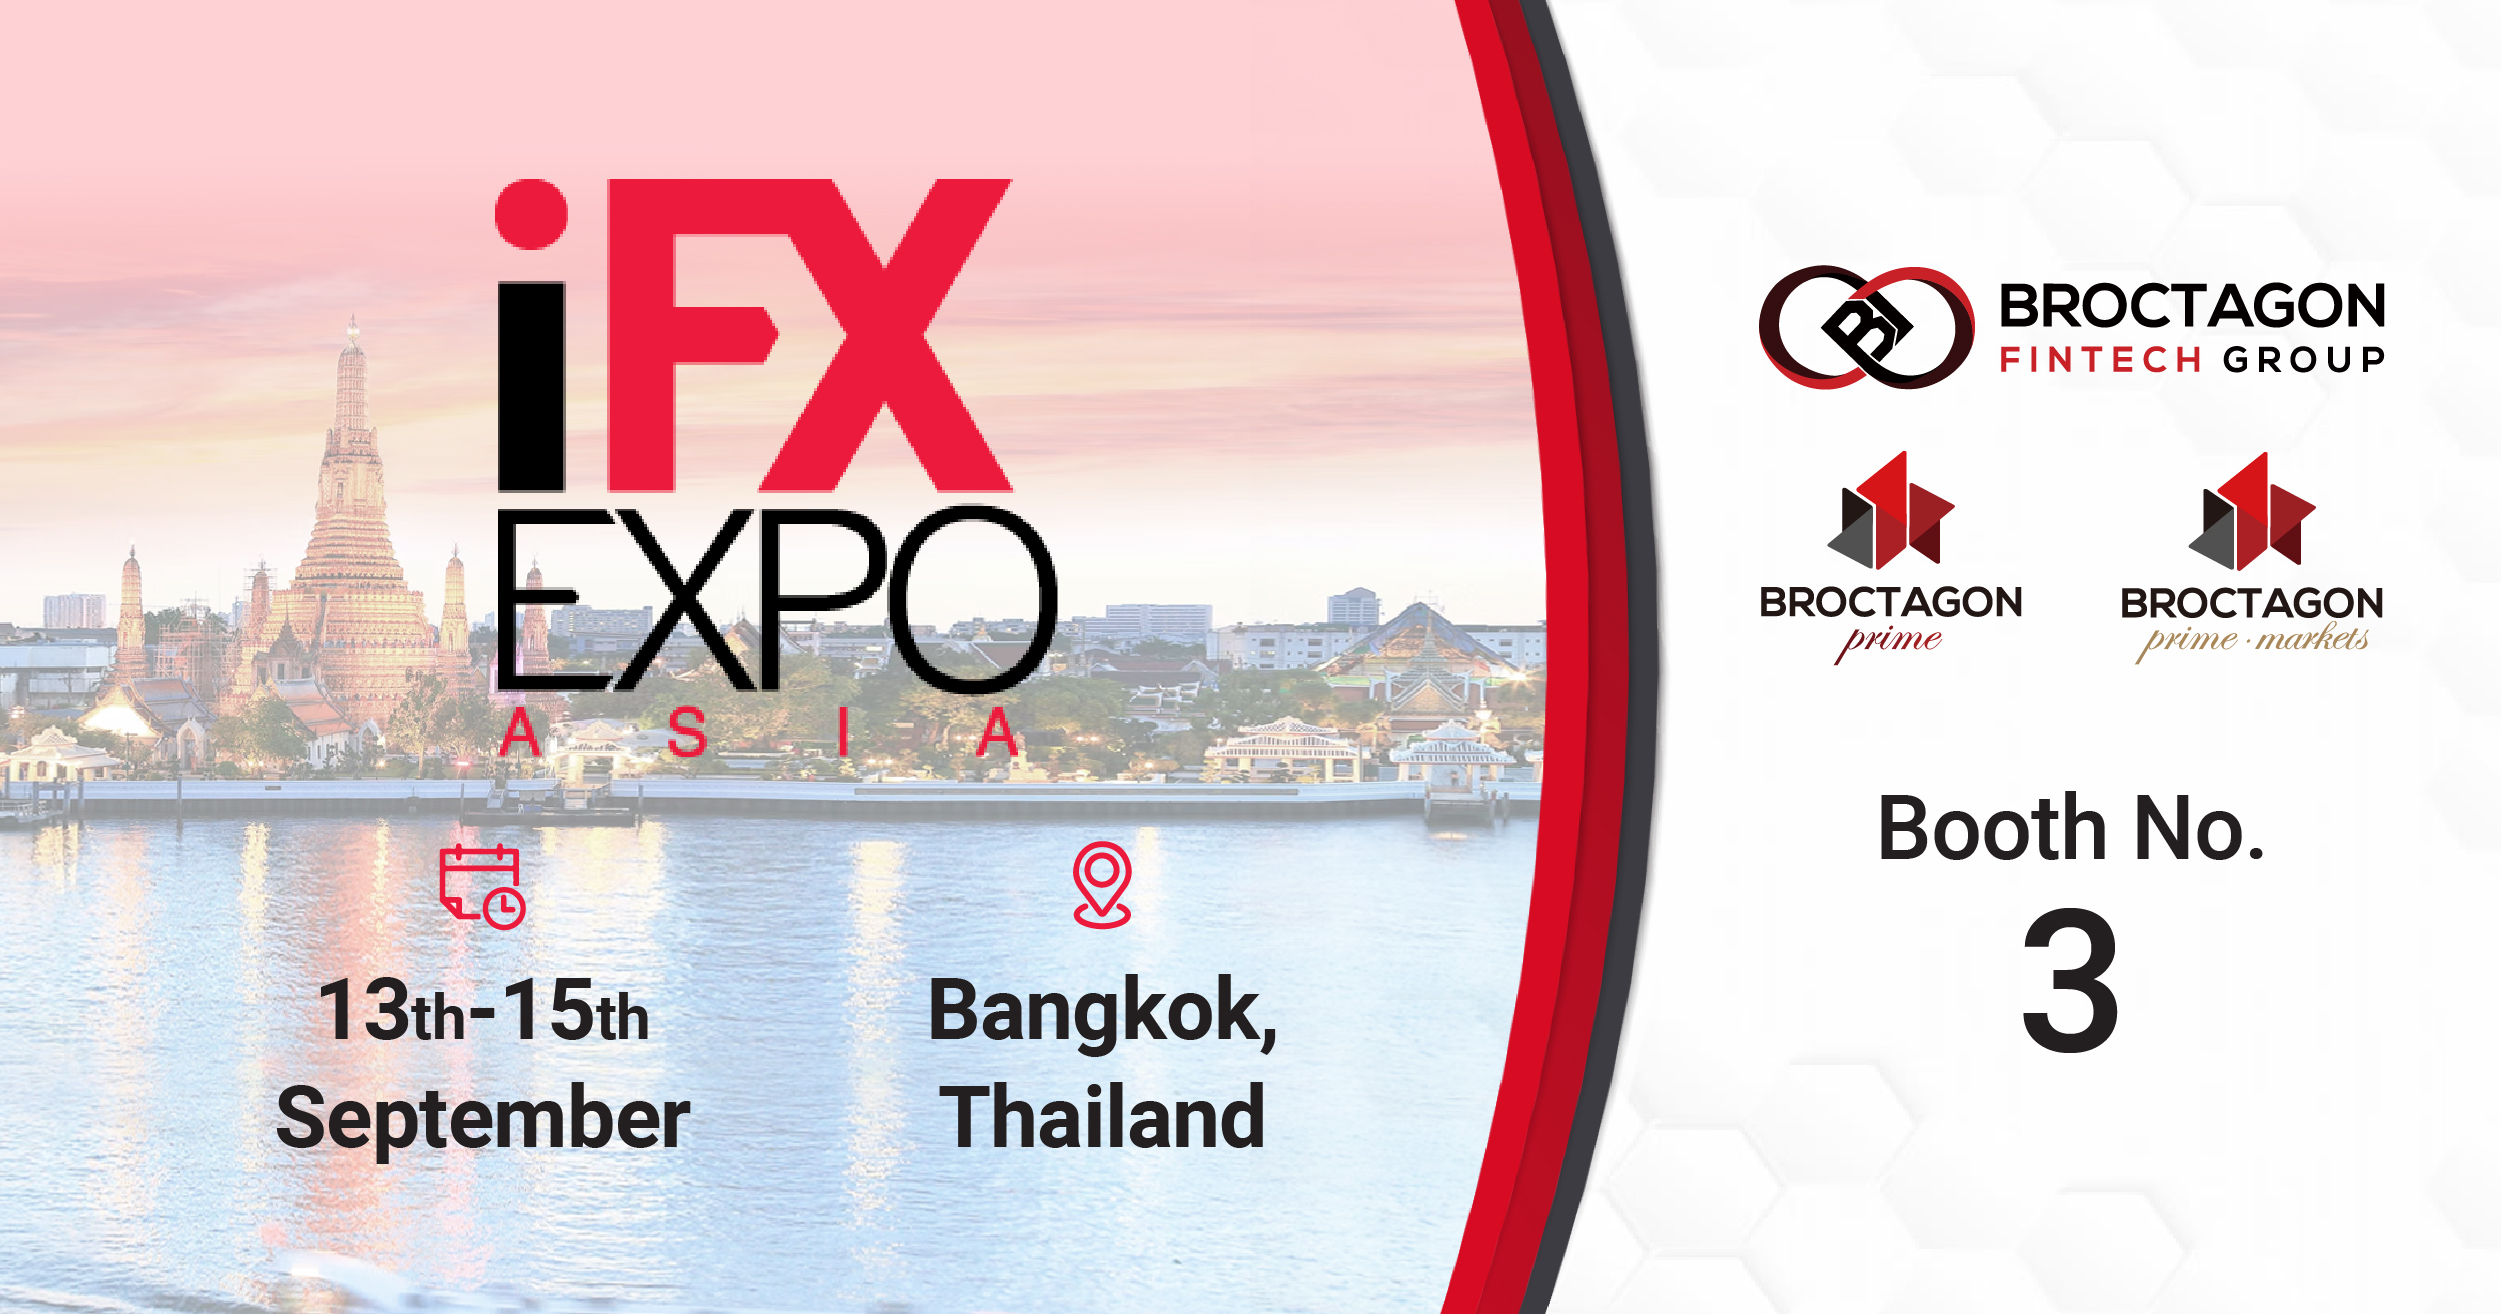 iFX Expo Asia 2022